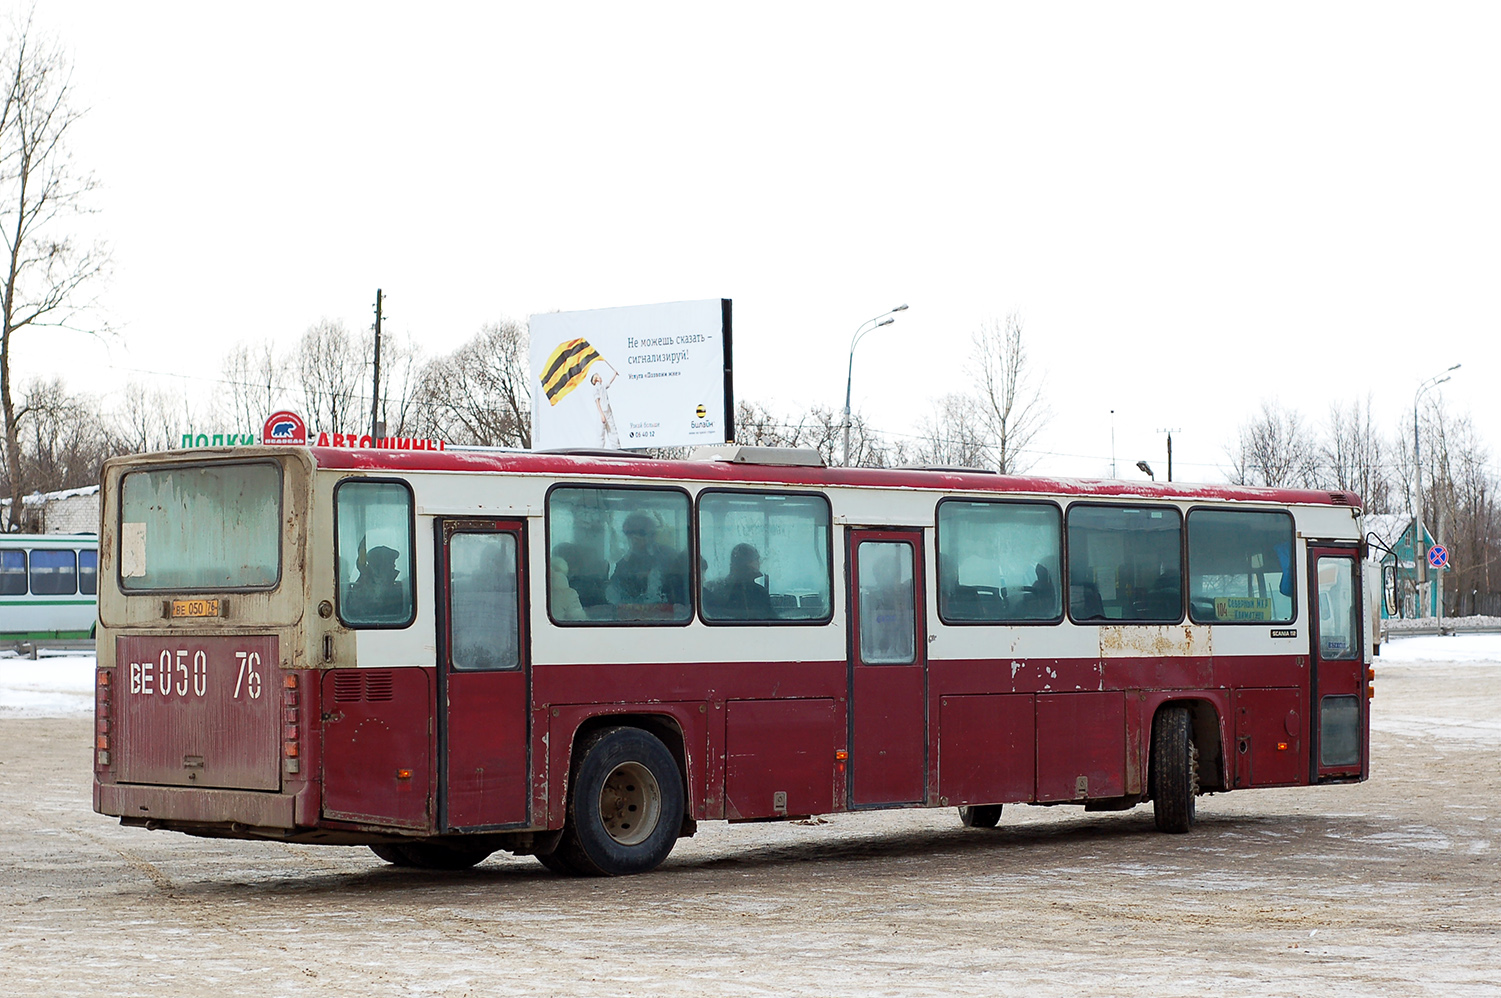 Яраслаўская вобласць, Scania CR112 № ВЕ 050 76